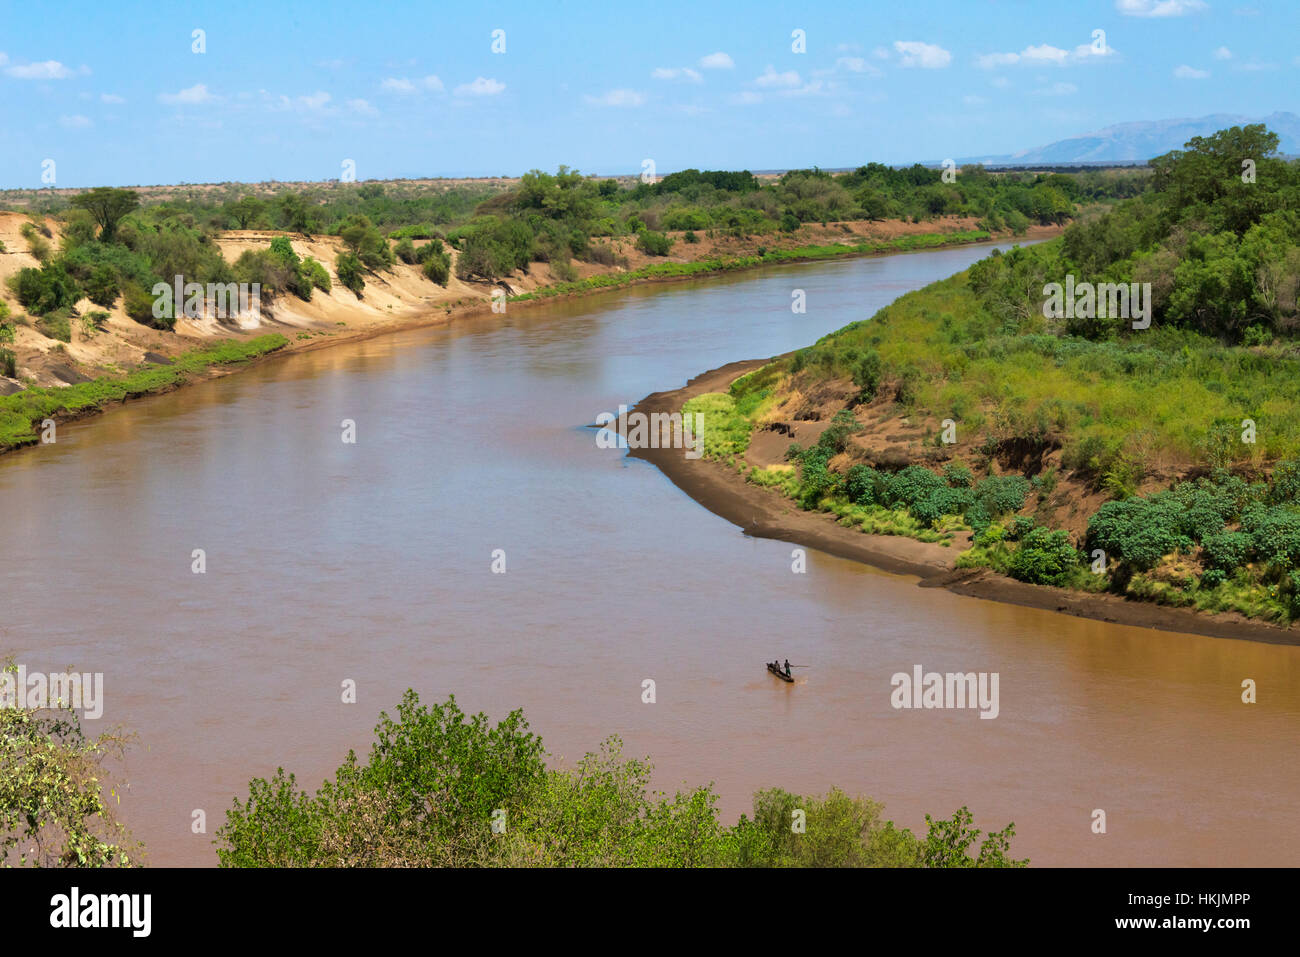 Lower Omo River, South Omo, Ethiopia Stock Photo